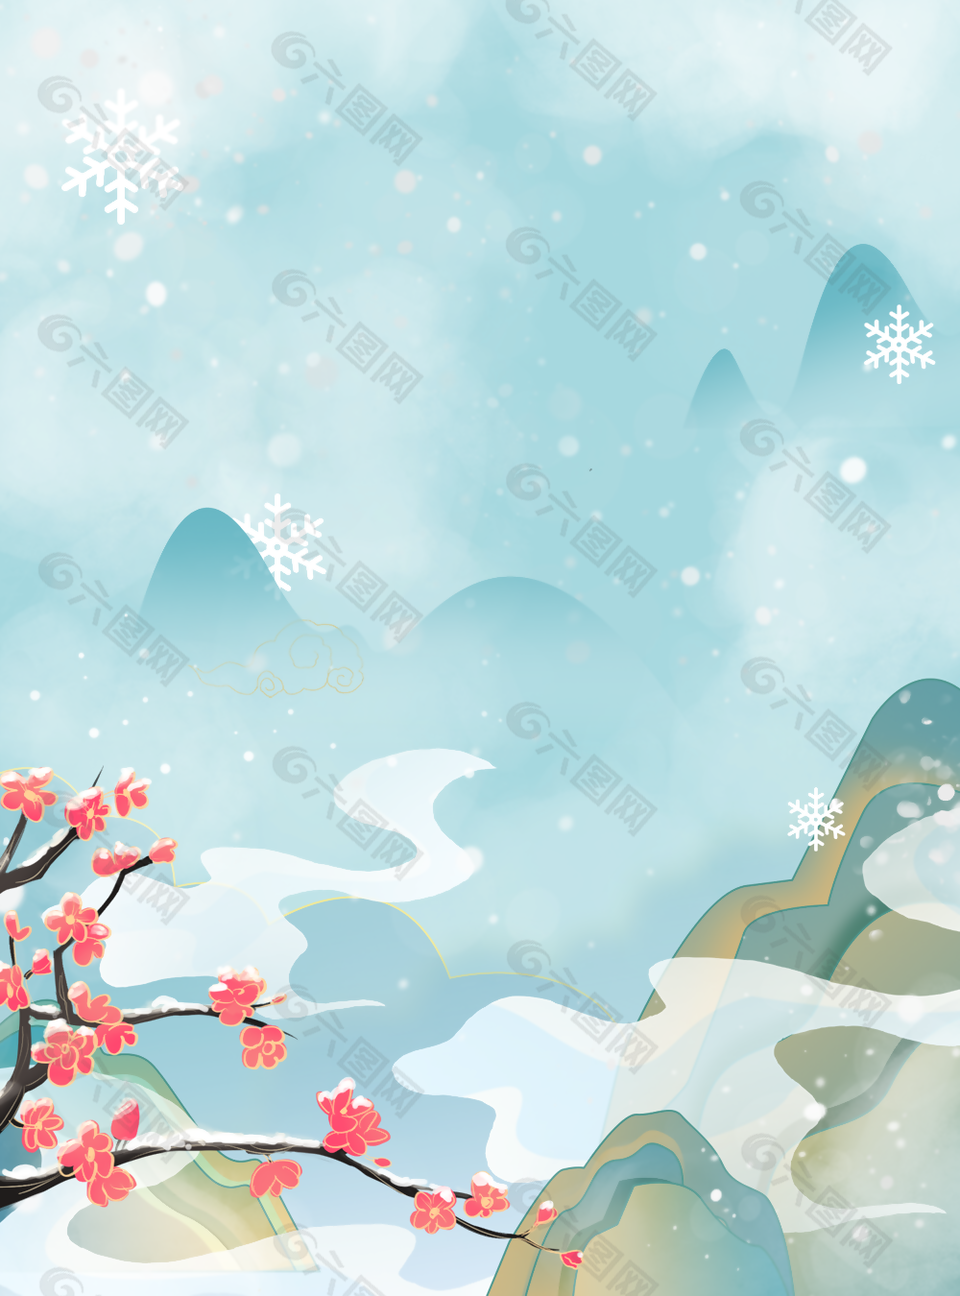 典雅中国风冬季大自然H5背景图下载